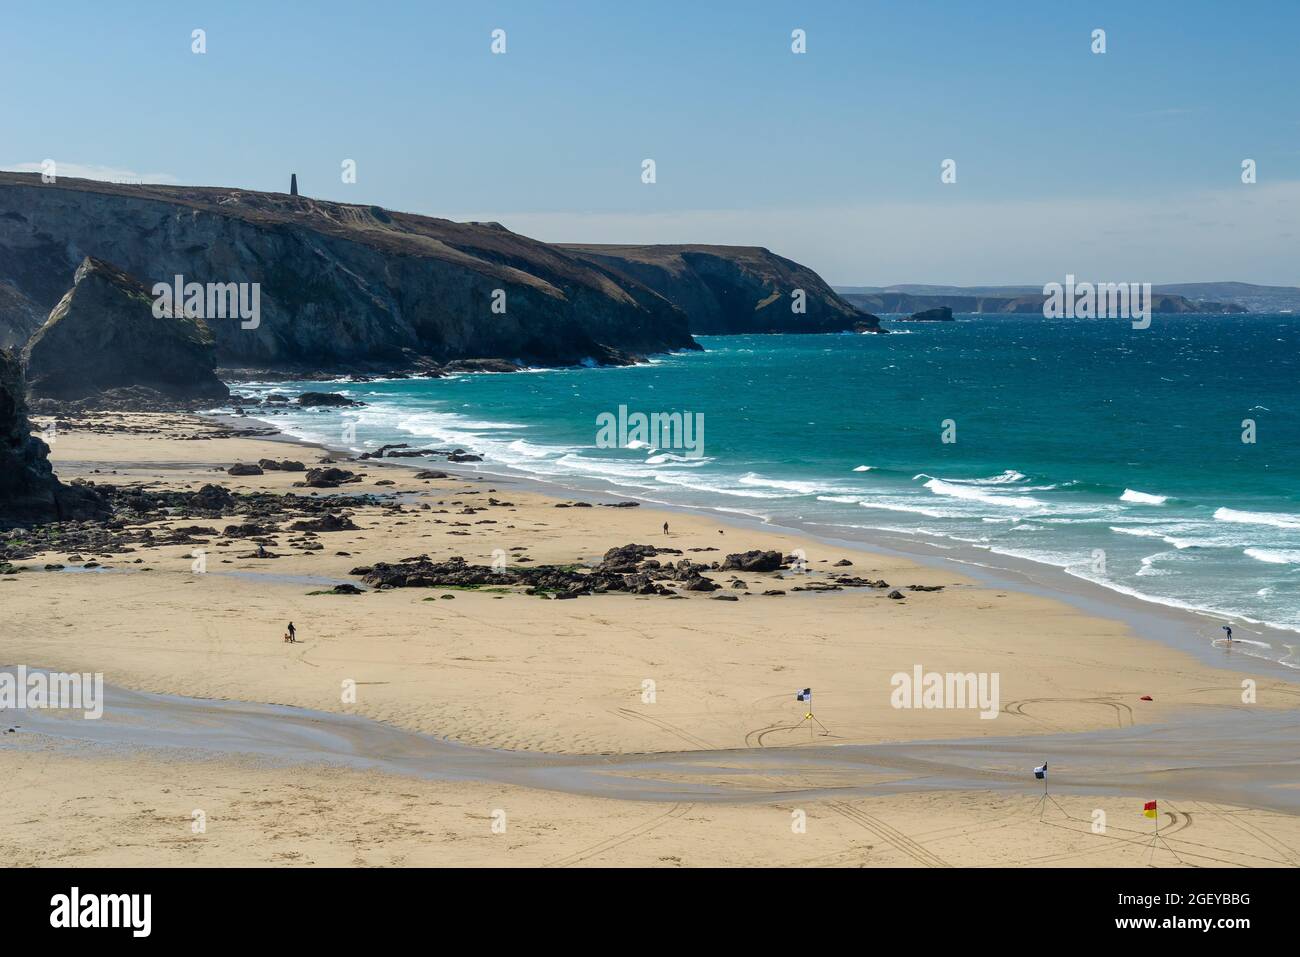 La belle plage de sable doré de Porthtowa Cornwall Angleterre Royaume-Uni Europe Banque D'Images